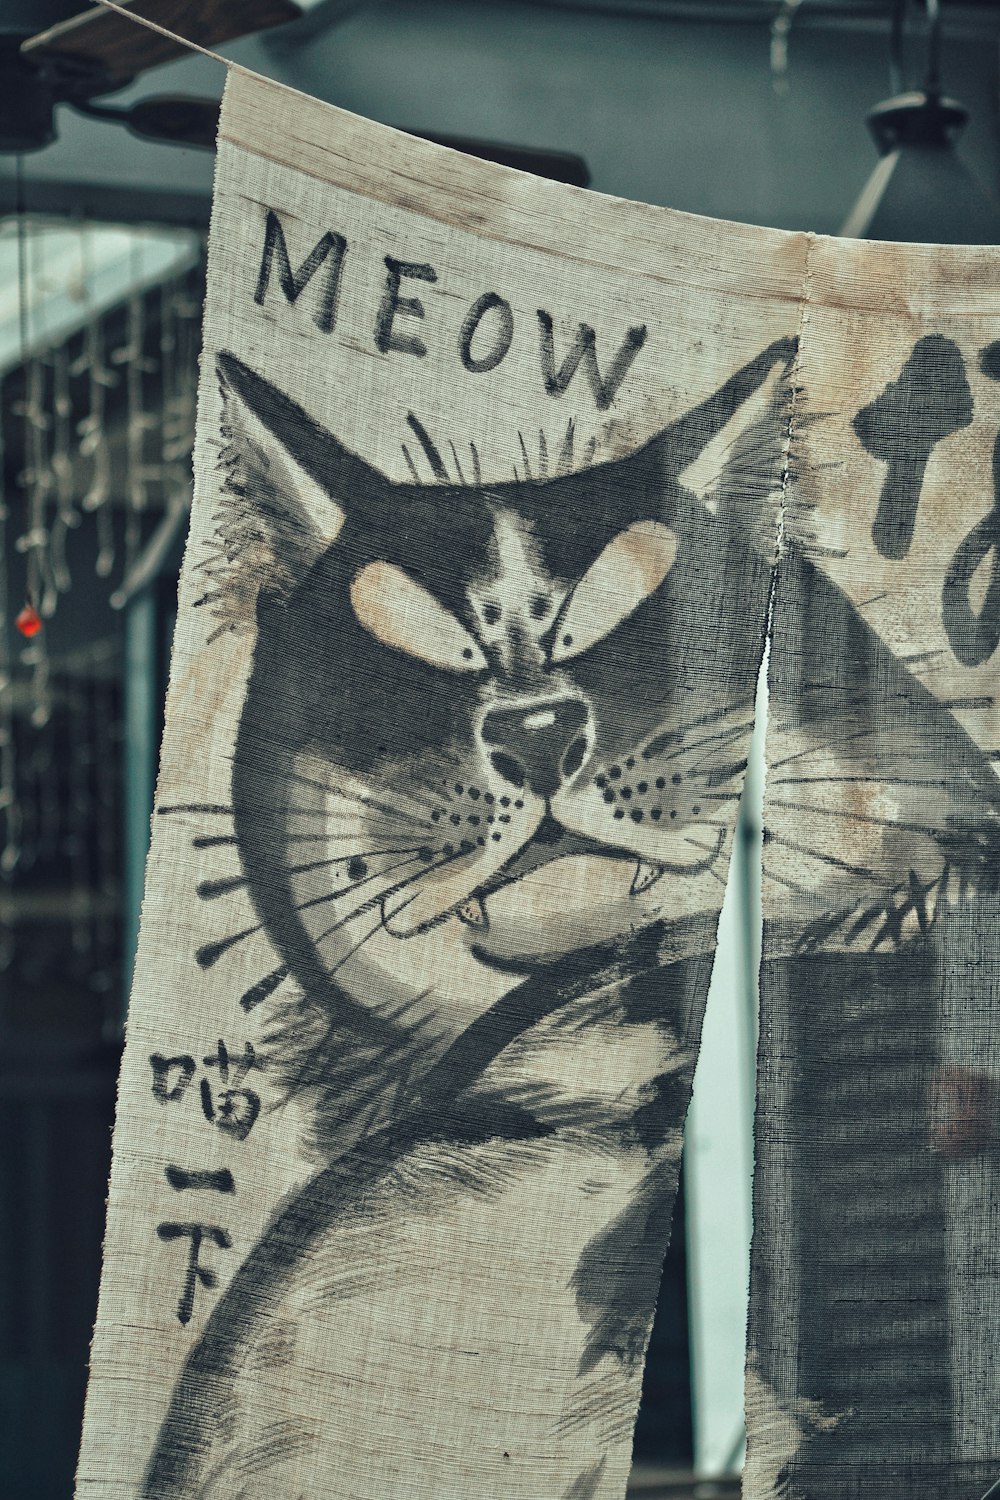 Arte de Meow